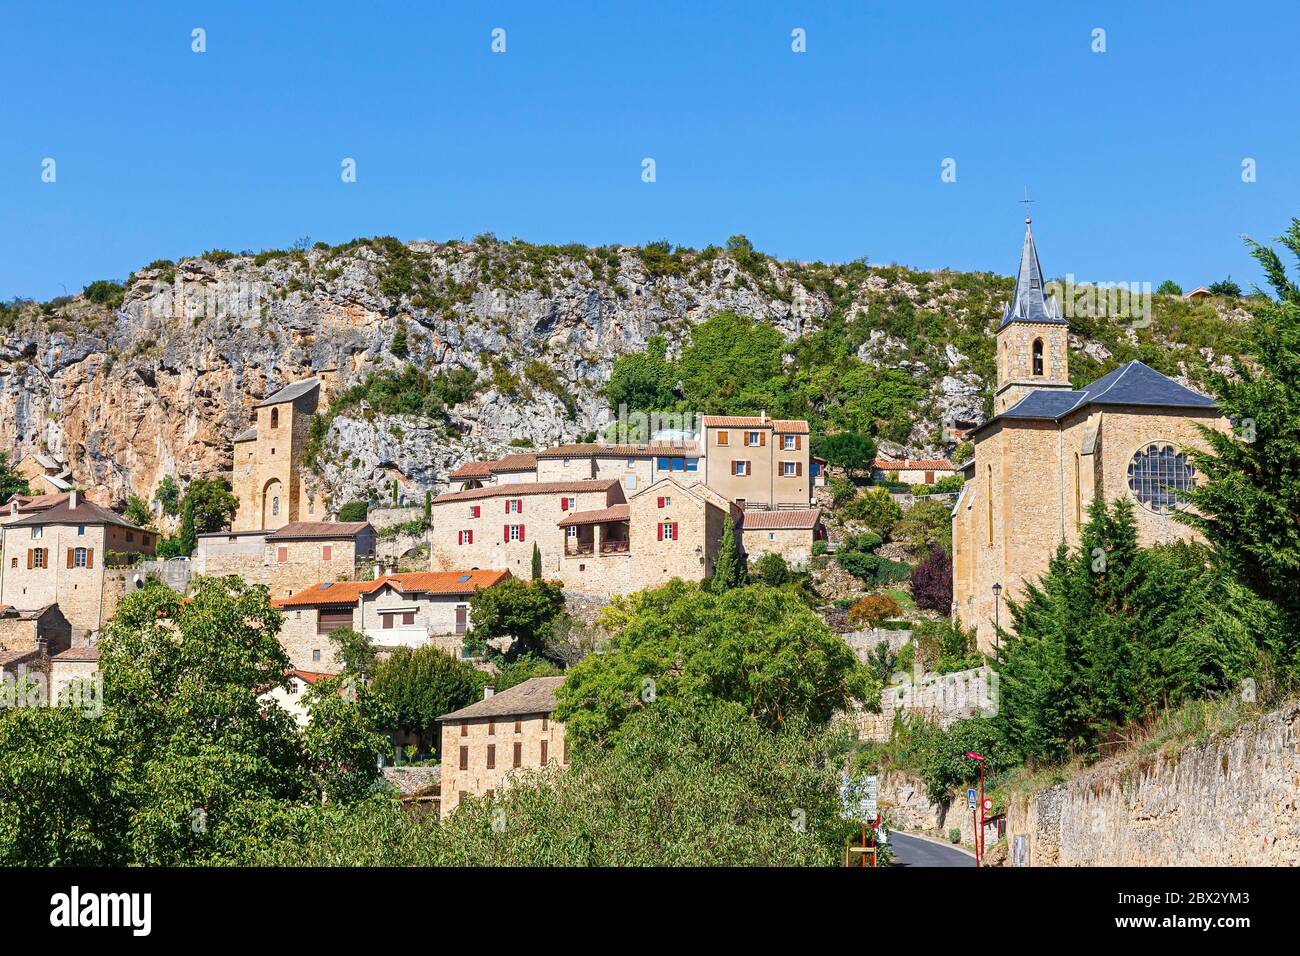 France, Aveyron, Peyre, labelled Les Plus Beaux Villages de France (The Most Beautiful Villages of France), the village Stock Photo